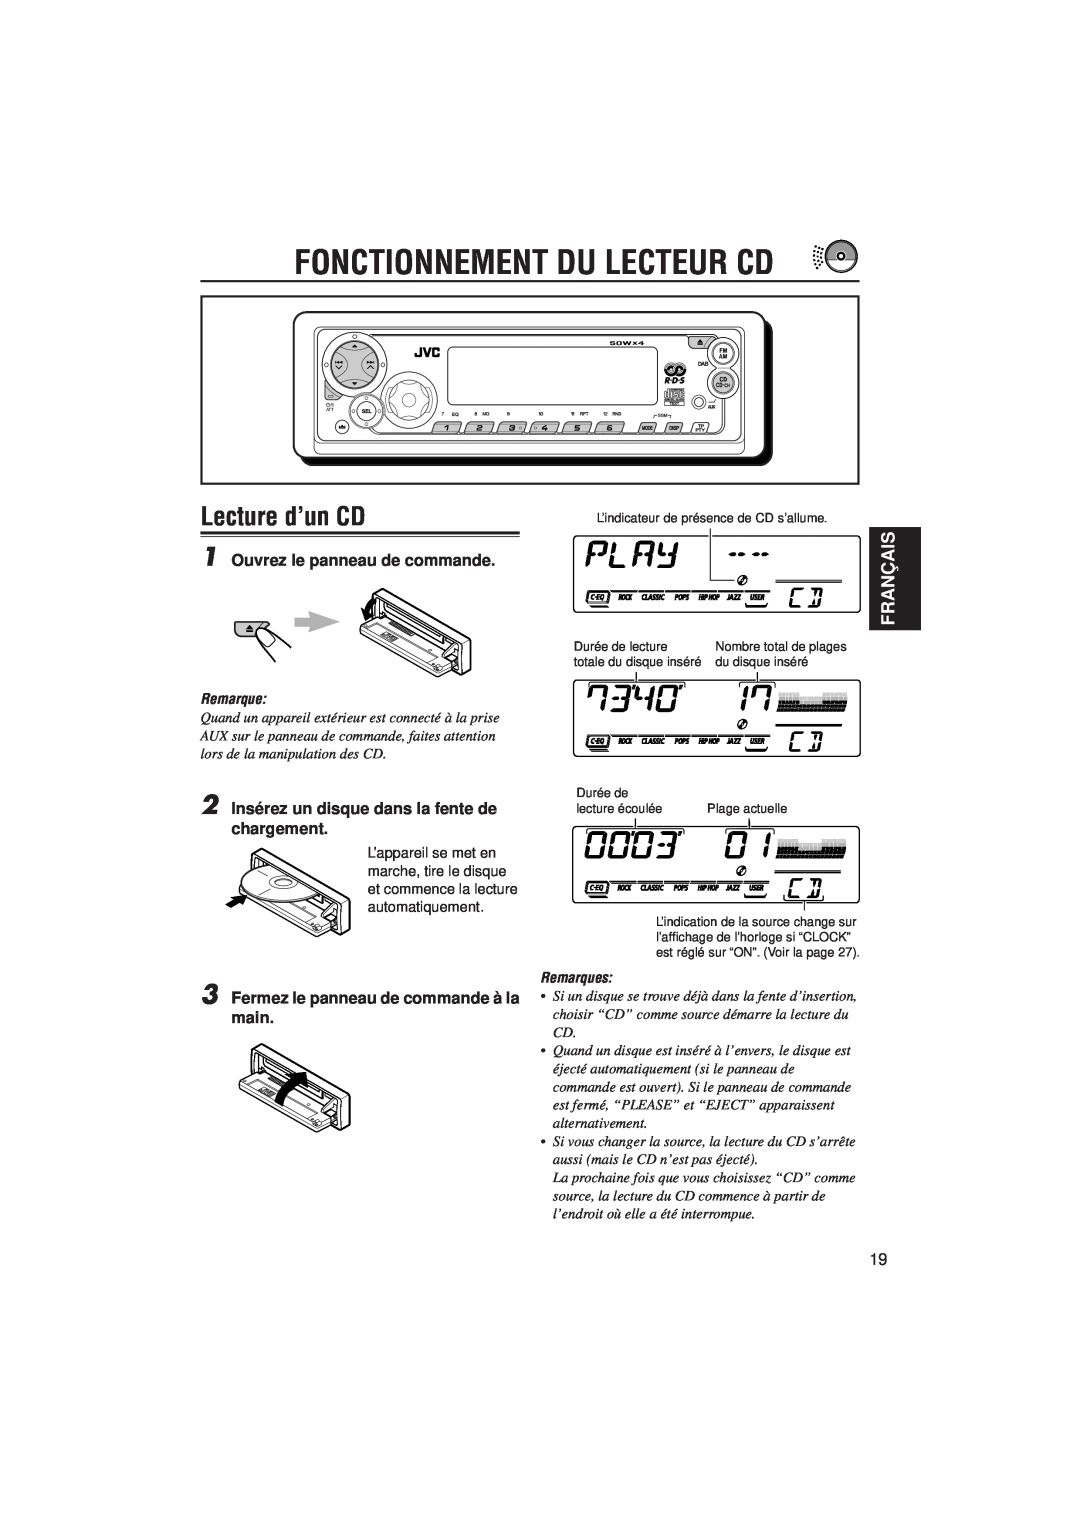 JVC KD-SX992R manual Fonctionnement Du Lecteur Cd, Lecture d’un CD, Français, Ouvrez le panneau de commande, Remarques 